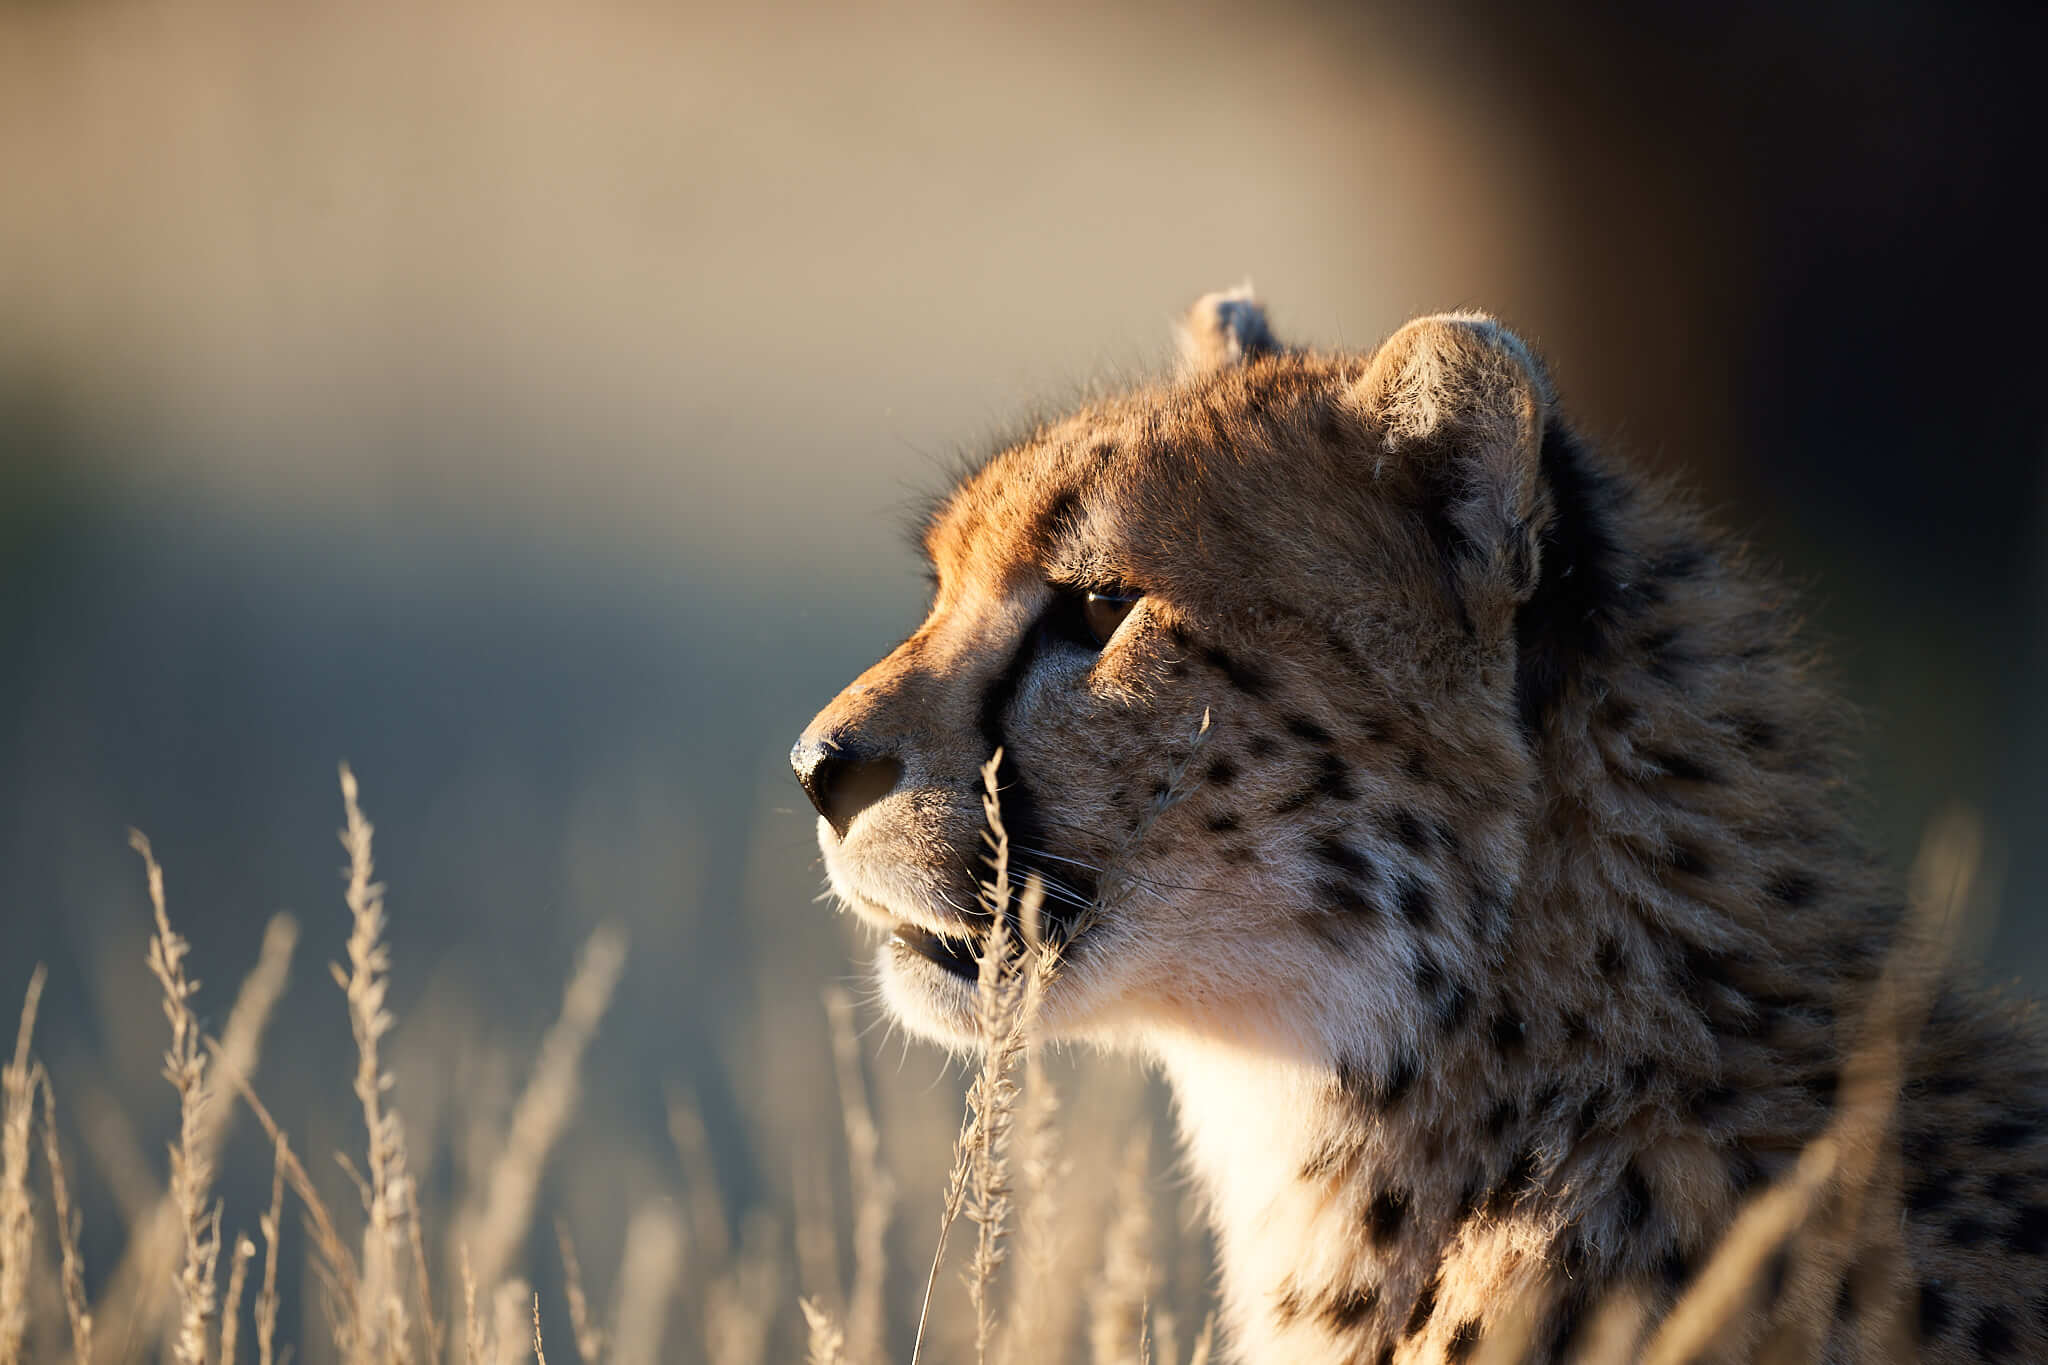 Das Bild zeigt ein Headshot eins Geparden im gegenlicht